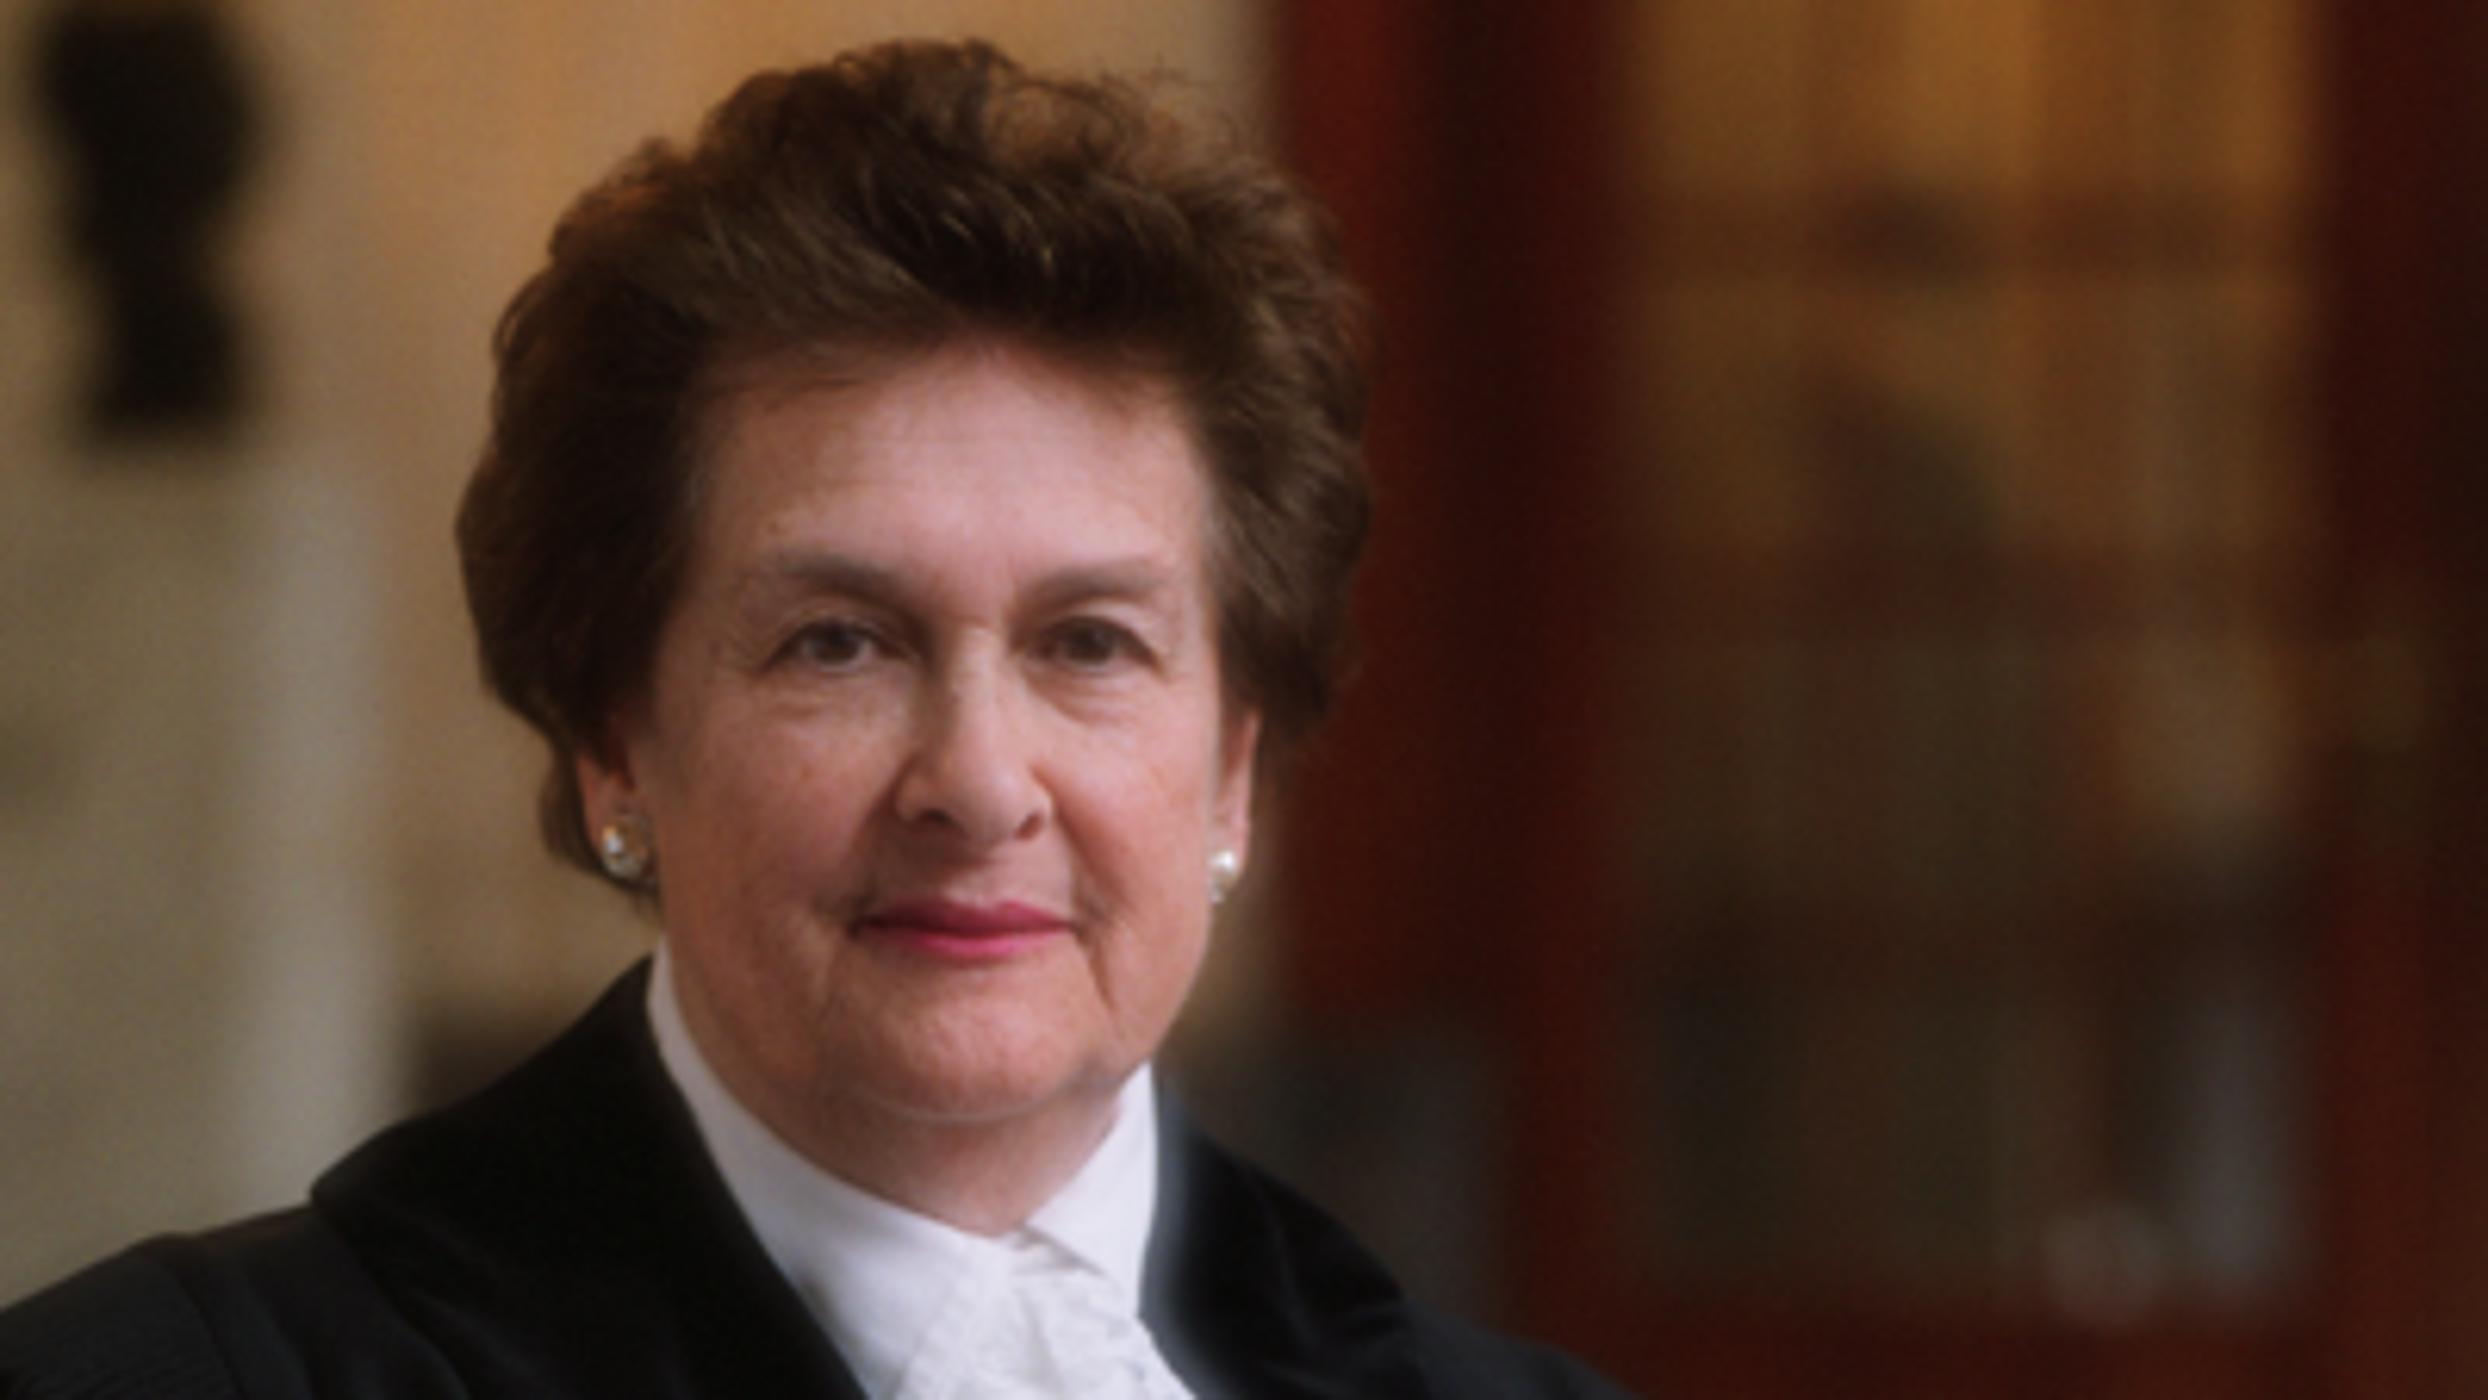 ’Democracy and International Law’: Dame Rosalyn Higgins